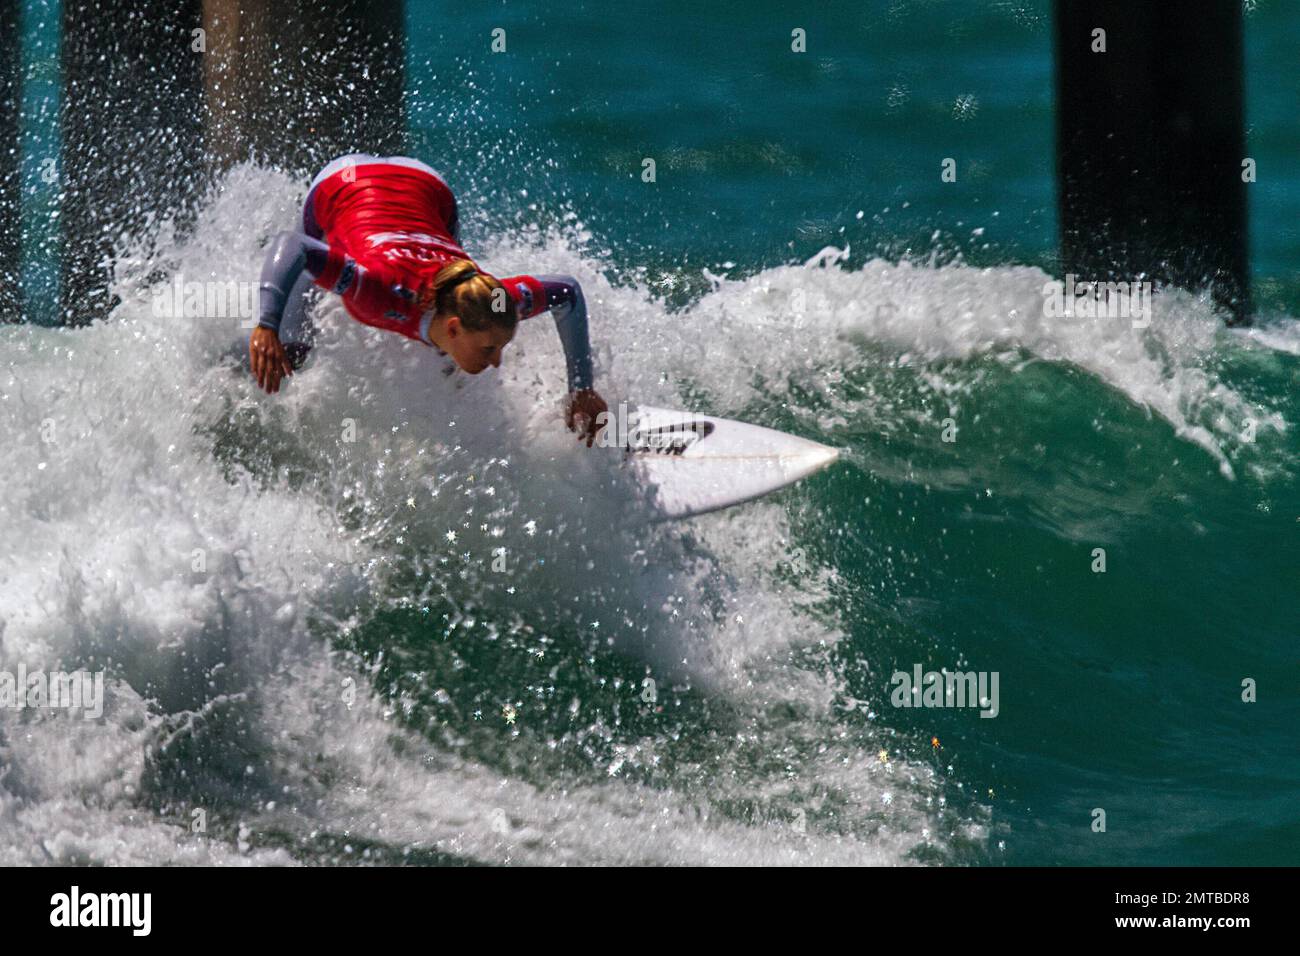 Lakey Peterson, 17 anni, ha sconfitto Carissa Moore, 19 anni, nell'ultimo evento della stagione ASP Women's World Championship Tour 2012, il Nike US Open of Surfing, di fronte a una folla di spettatori a Huntington Beach a Los Angeles, California. 5th agosto 2012. Foto Stock